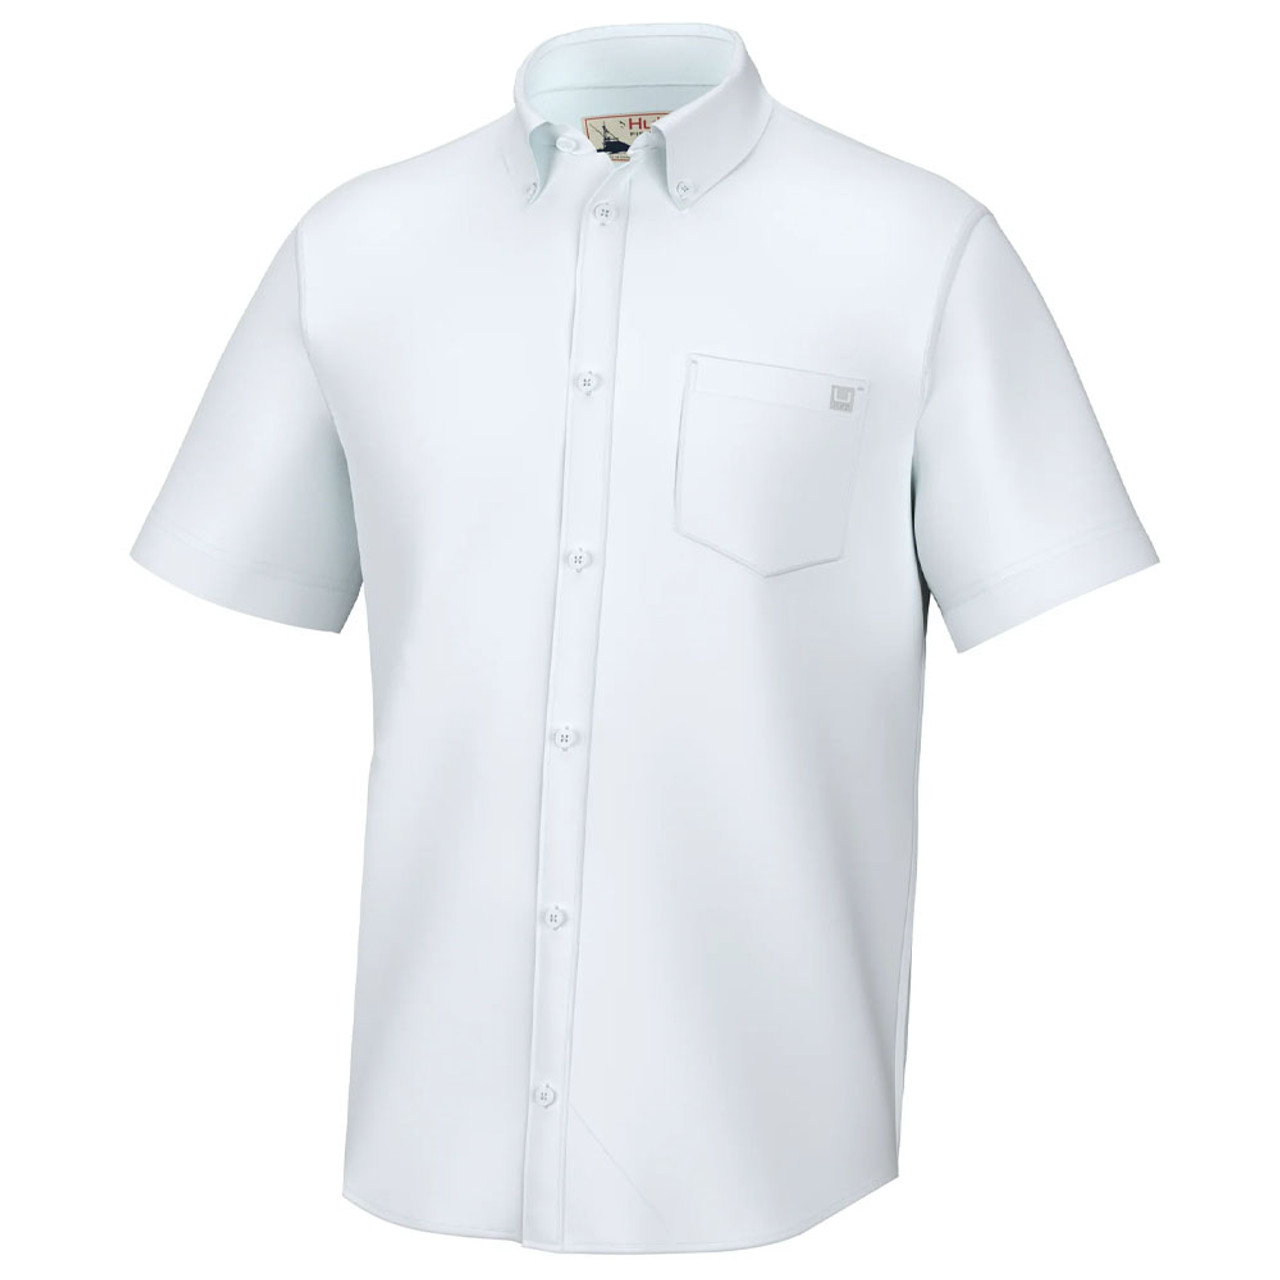 Huk Kona Solid Short Sleeve Shirt - Men's Harbor Mist XL